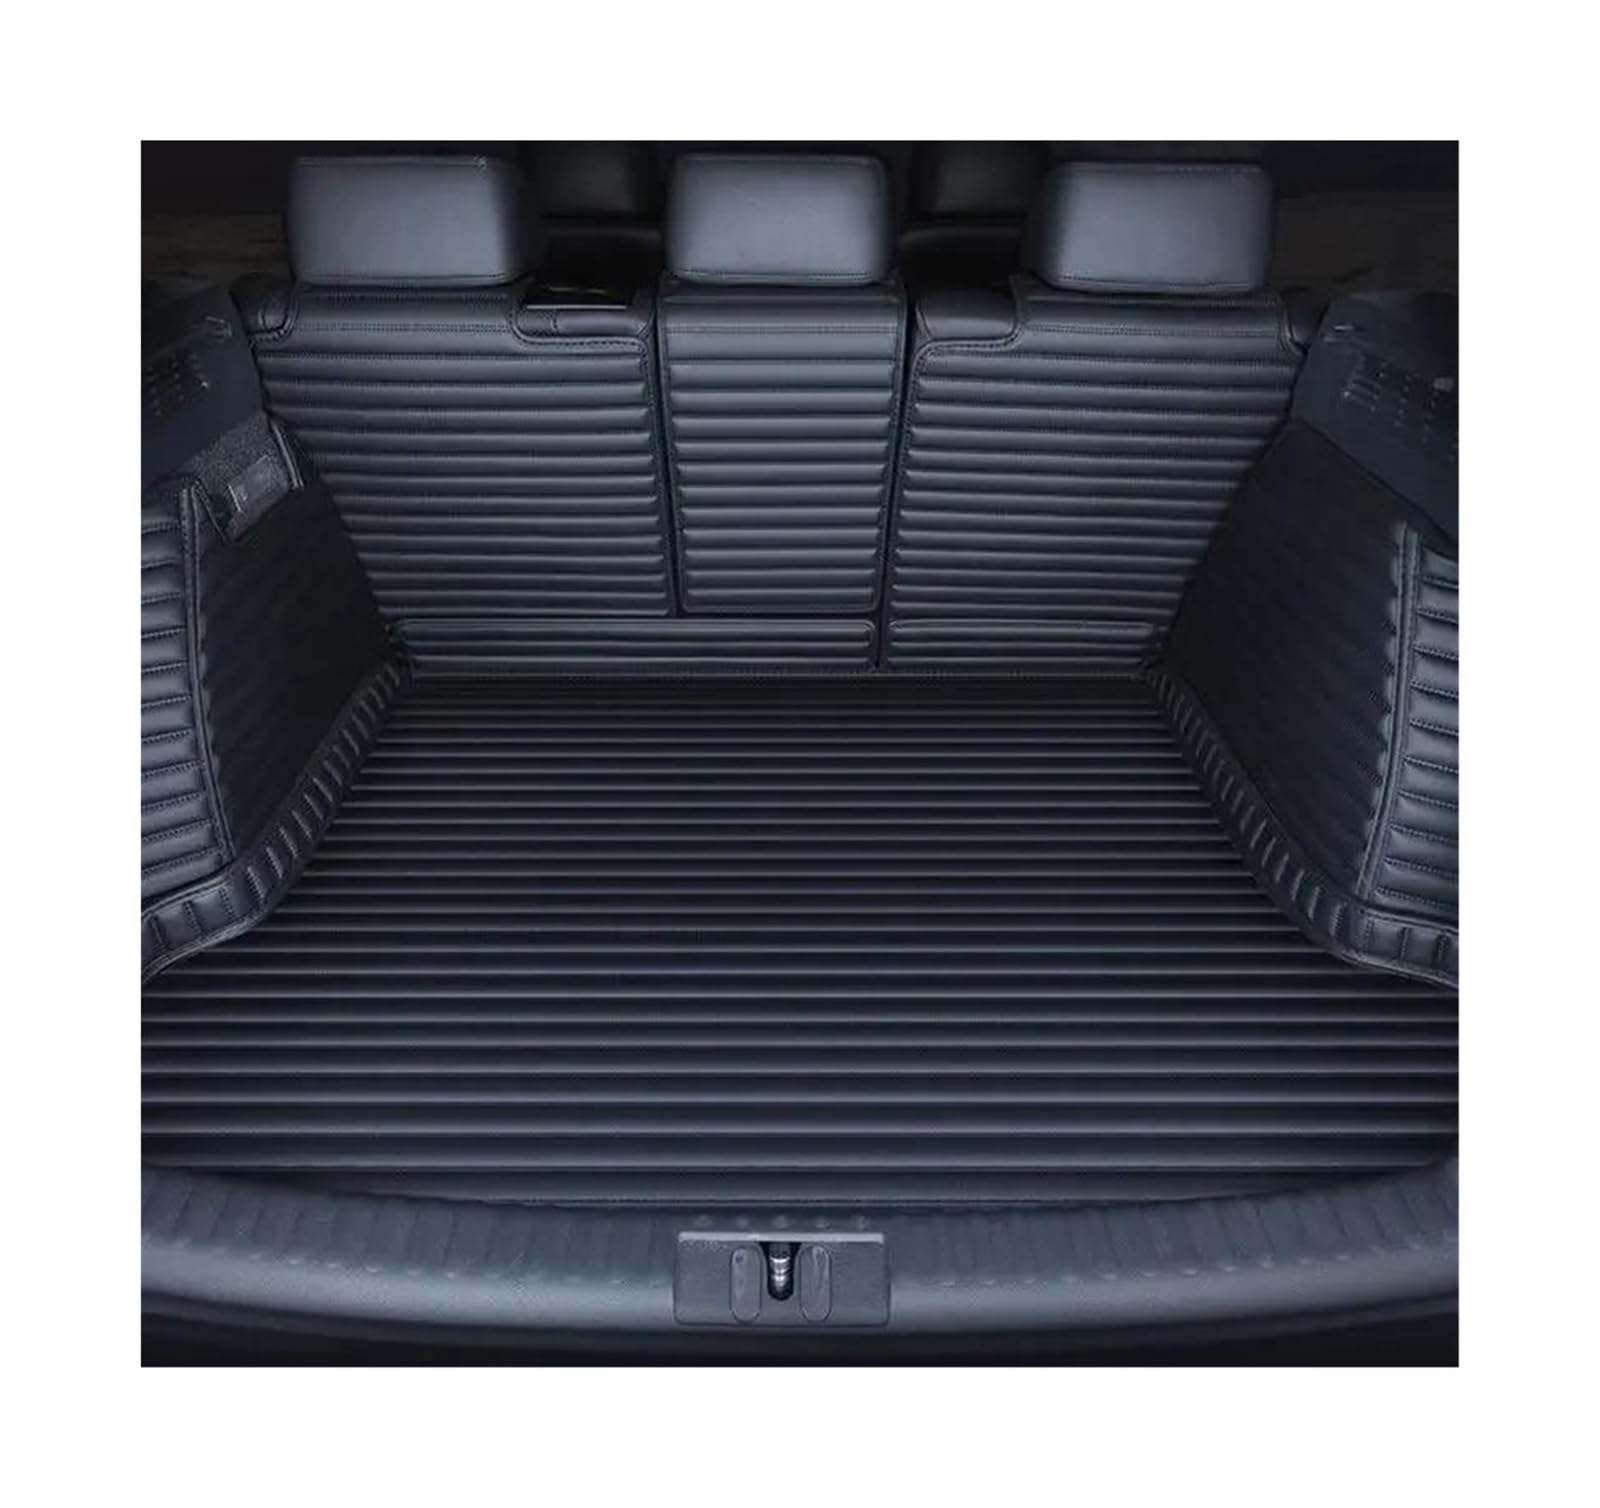 Für L&and R&over Für R&ange R&over Sport 2018 2019-2022 Maßgefertigte Kofferraumbodenmatte Kofferraummatten Kofferraumschutzmatten Kofferraumwanne Teppich Kofferraummatten(Black set) von POMPOMPUR